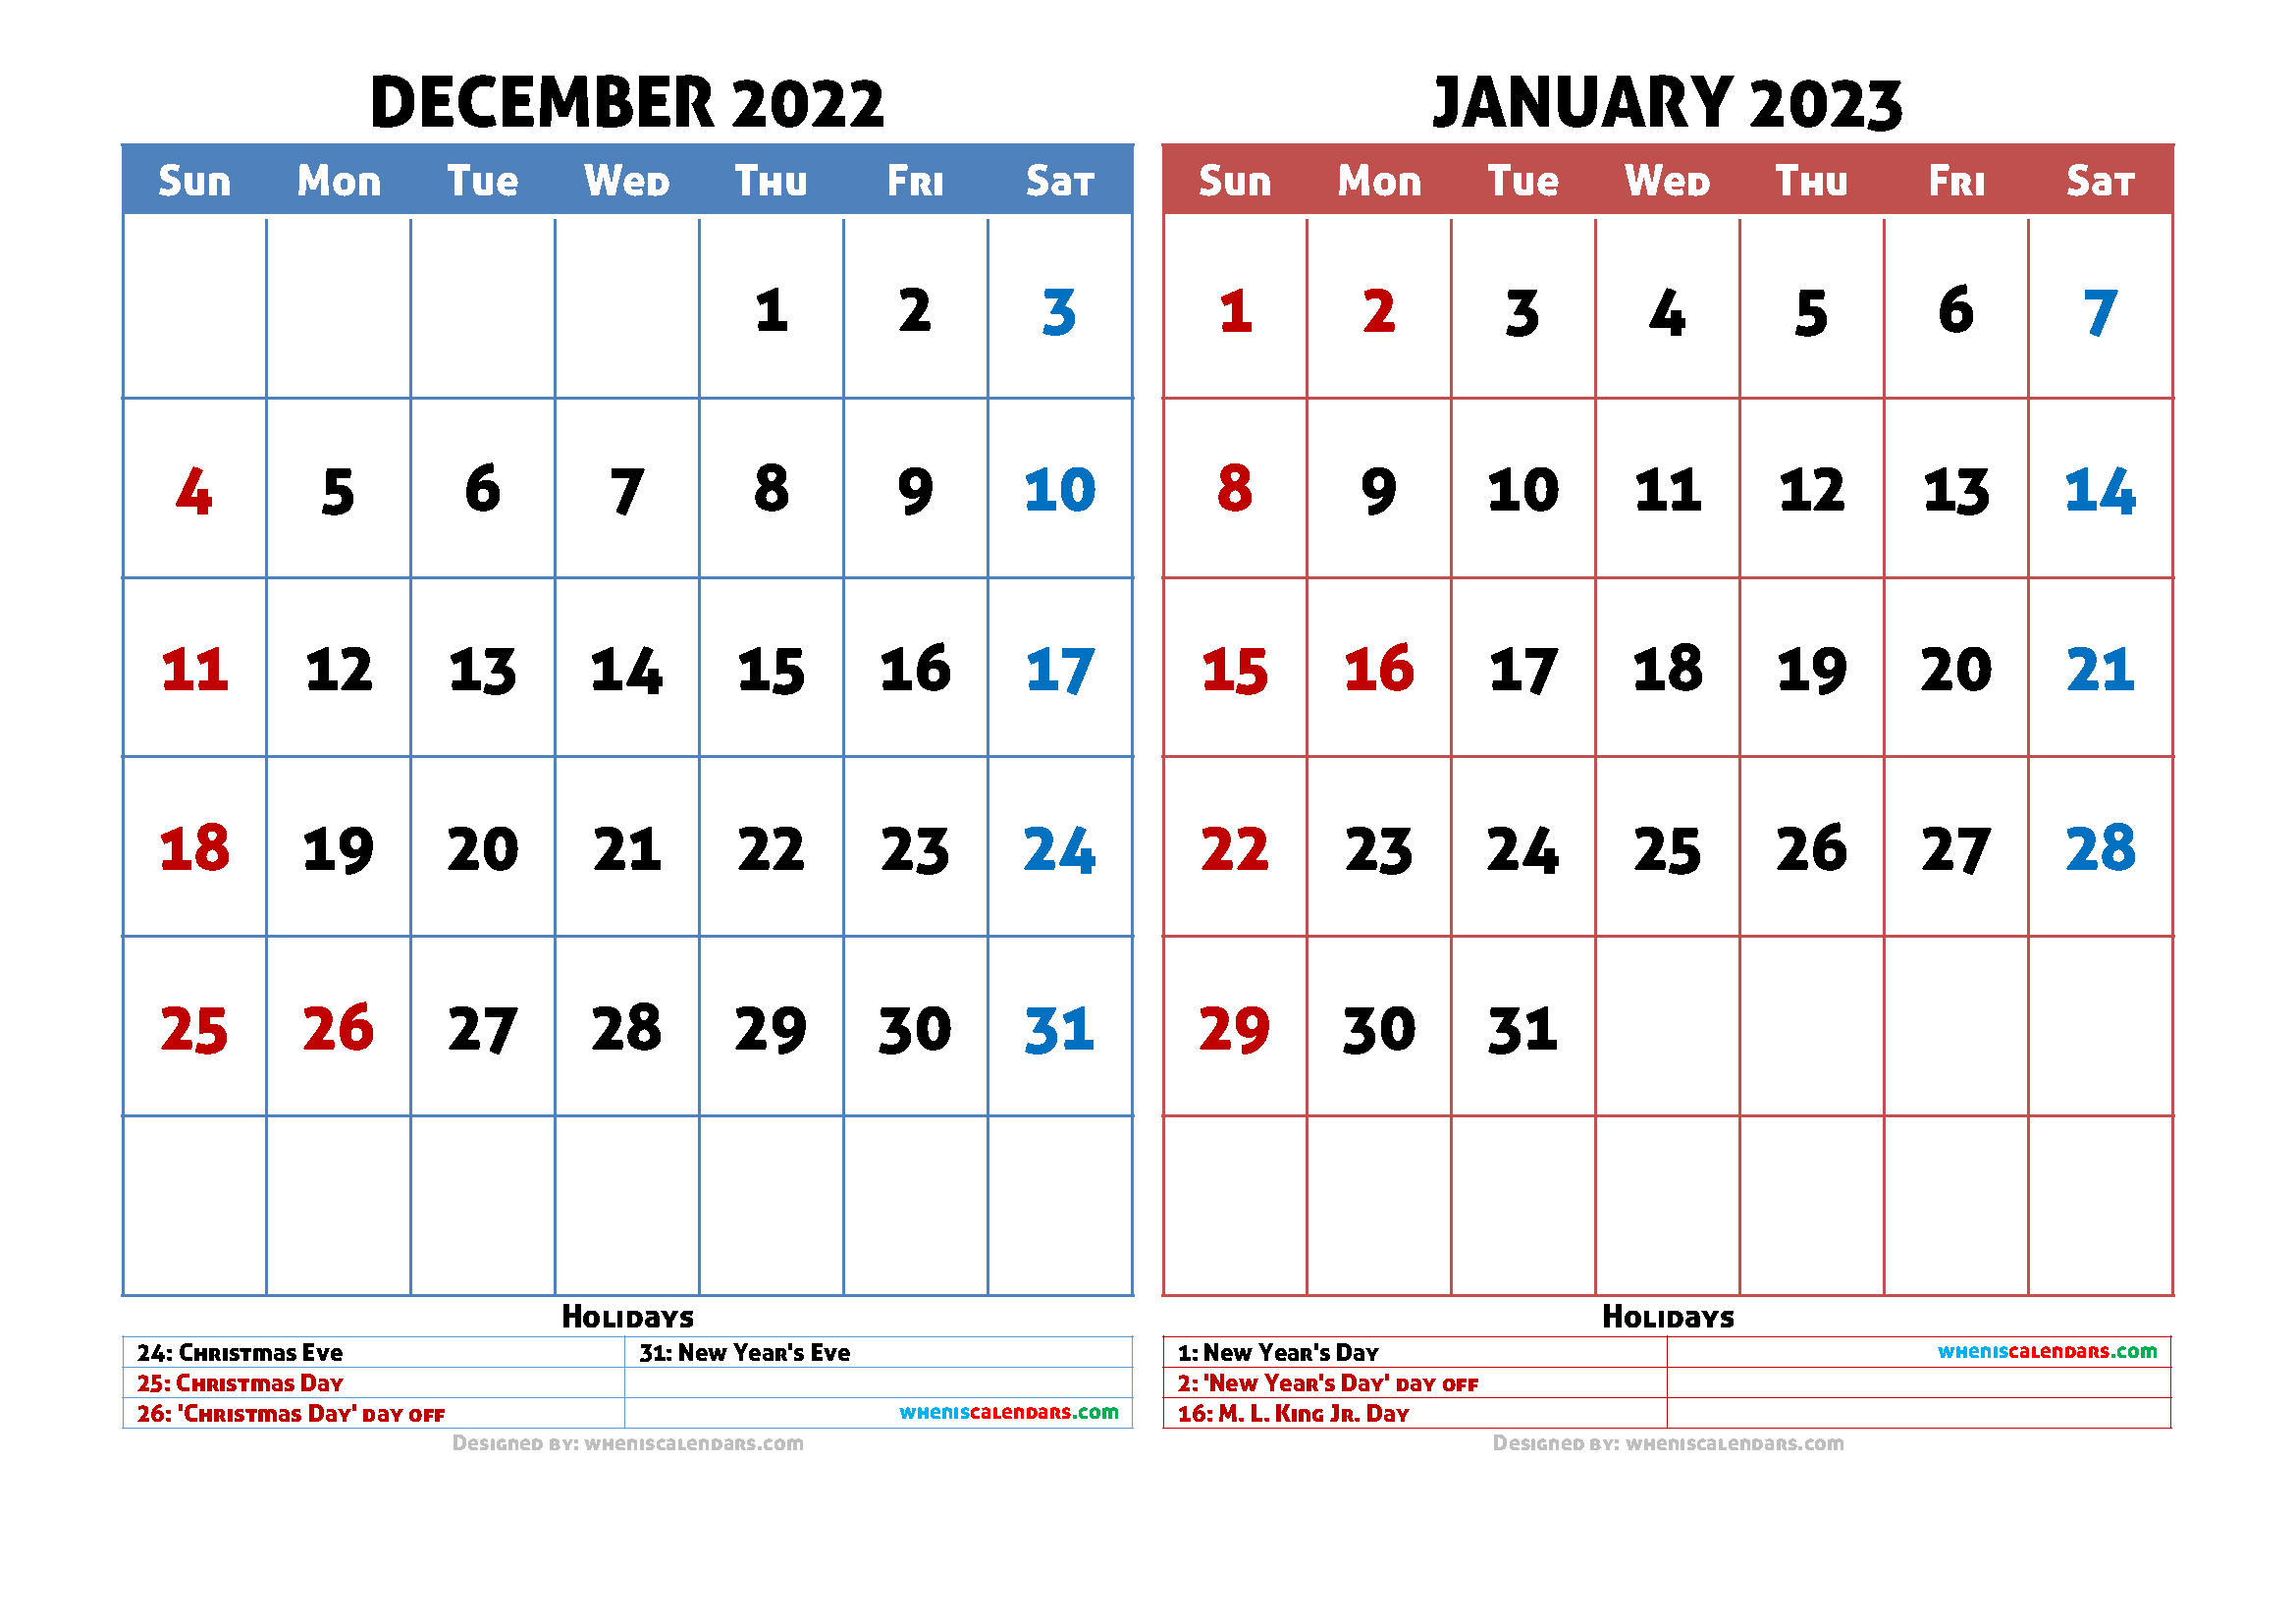 Dec 2023 And Jan 2023 Calendar Get Calendar 2023 Update